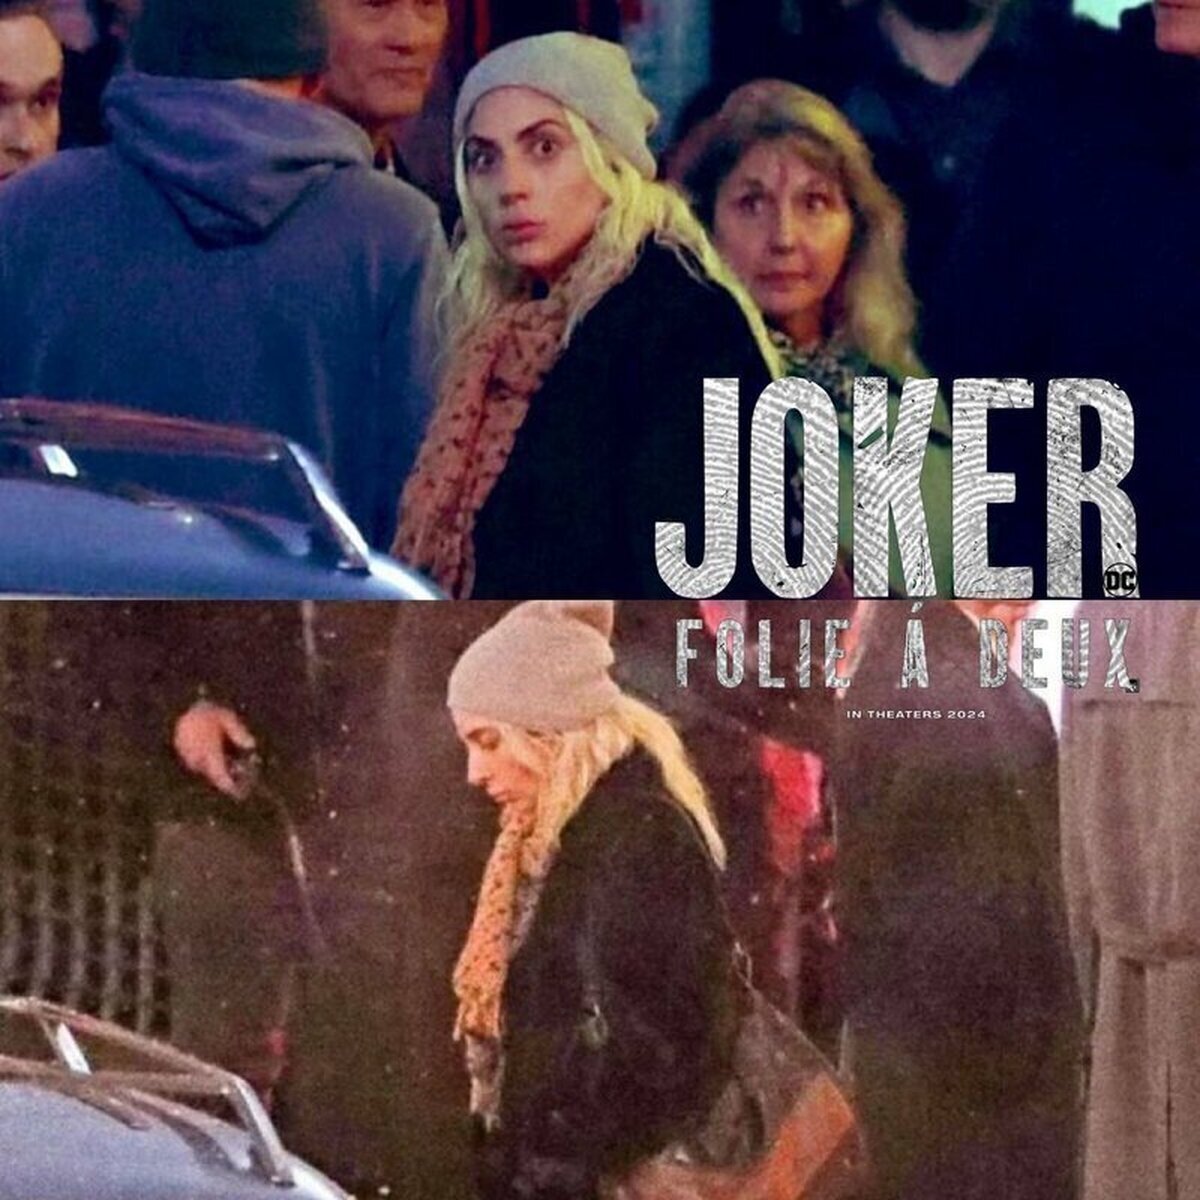 Primeras imágenes de Lady Gaga en el set de rodaje de Joker Folie a deux